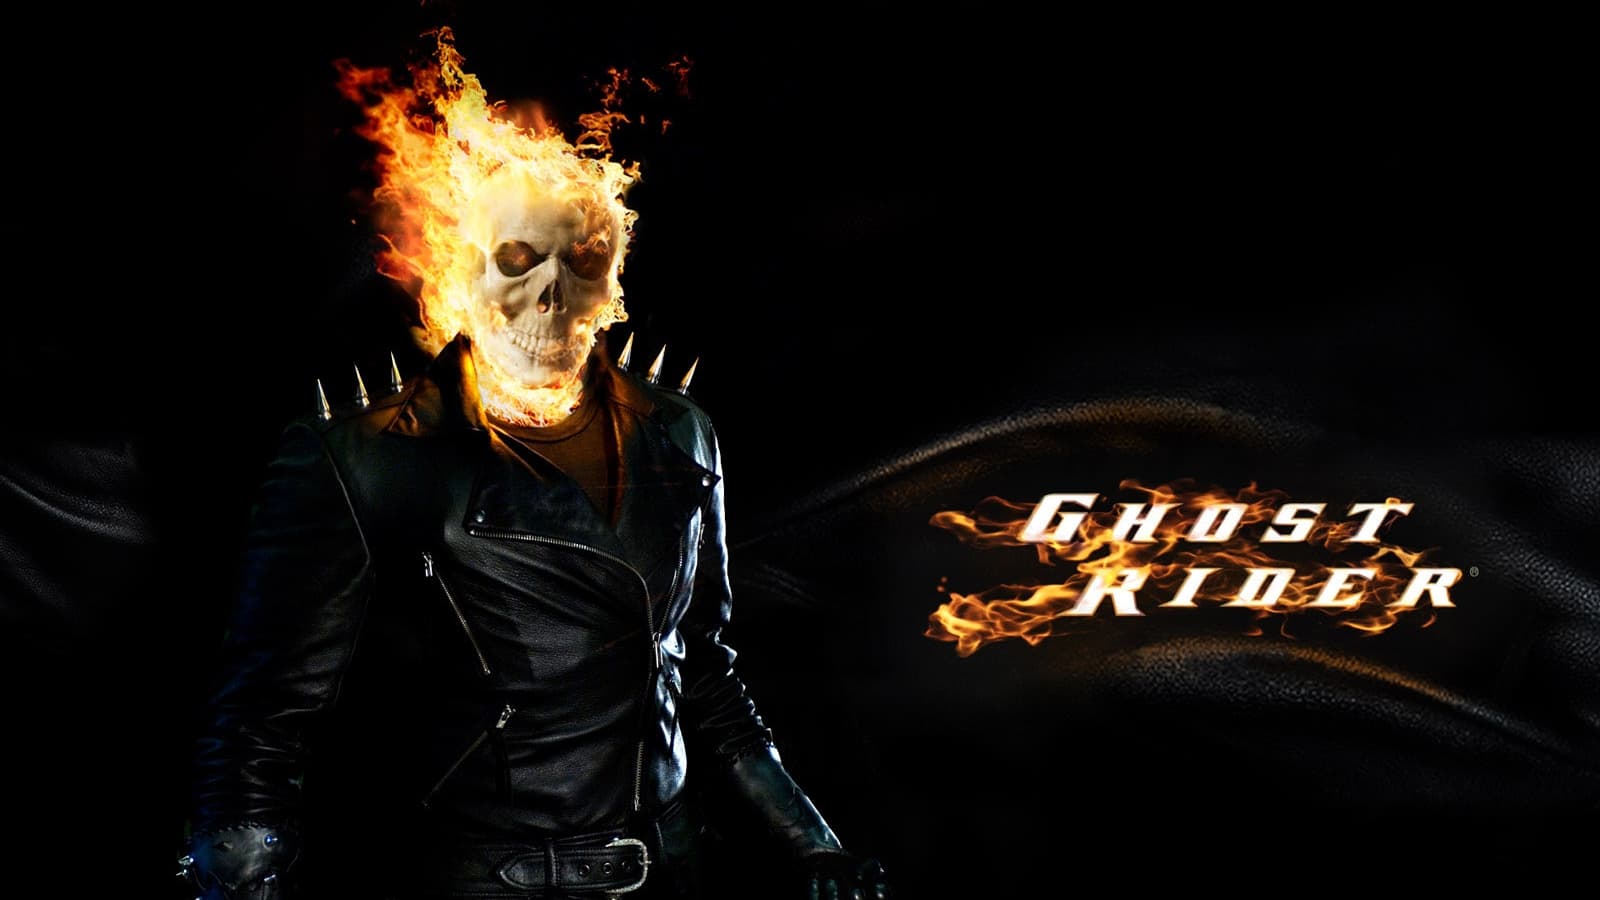 Ghost Rider: El motorista fantasma (2007)